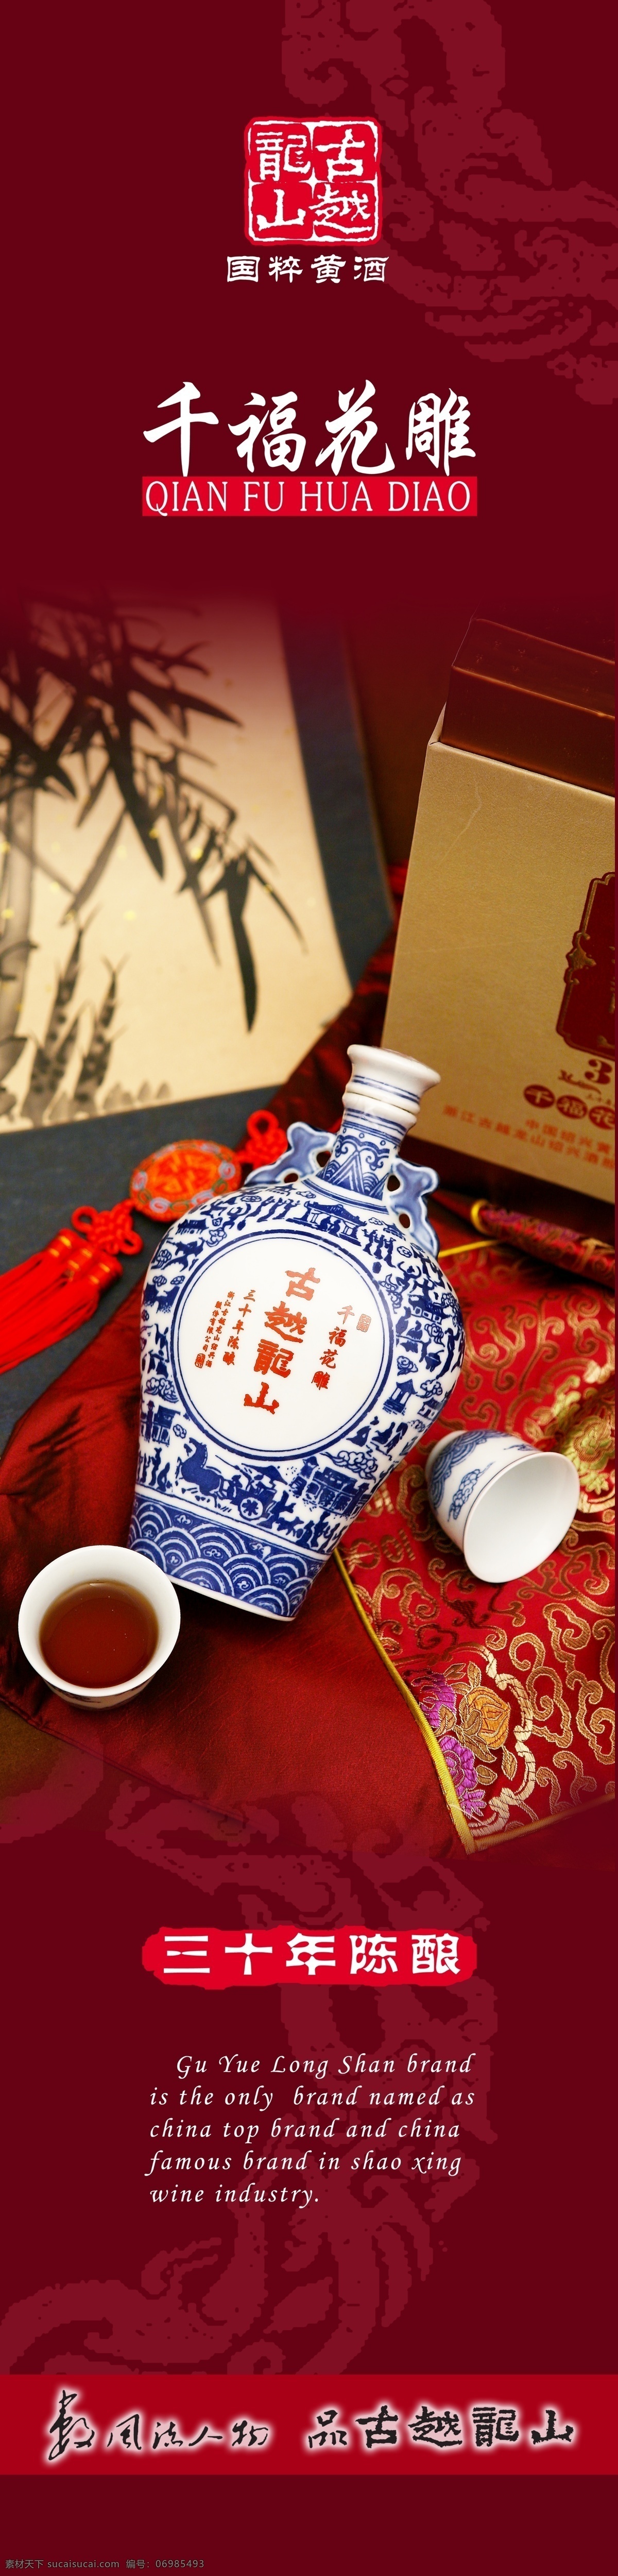 千福花雕 古越龙山 标致 酒杯 瓶子 中国风 其他模版 广告设计模板 源文件